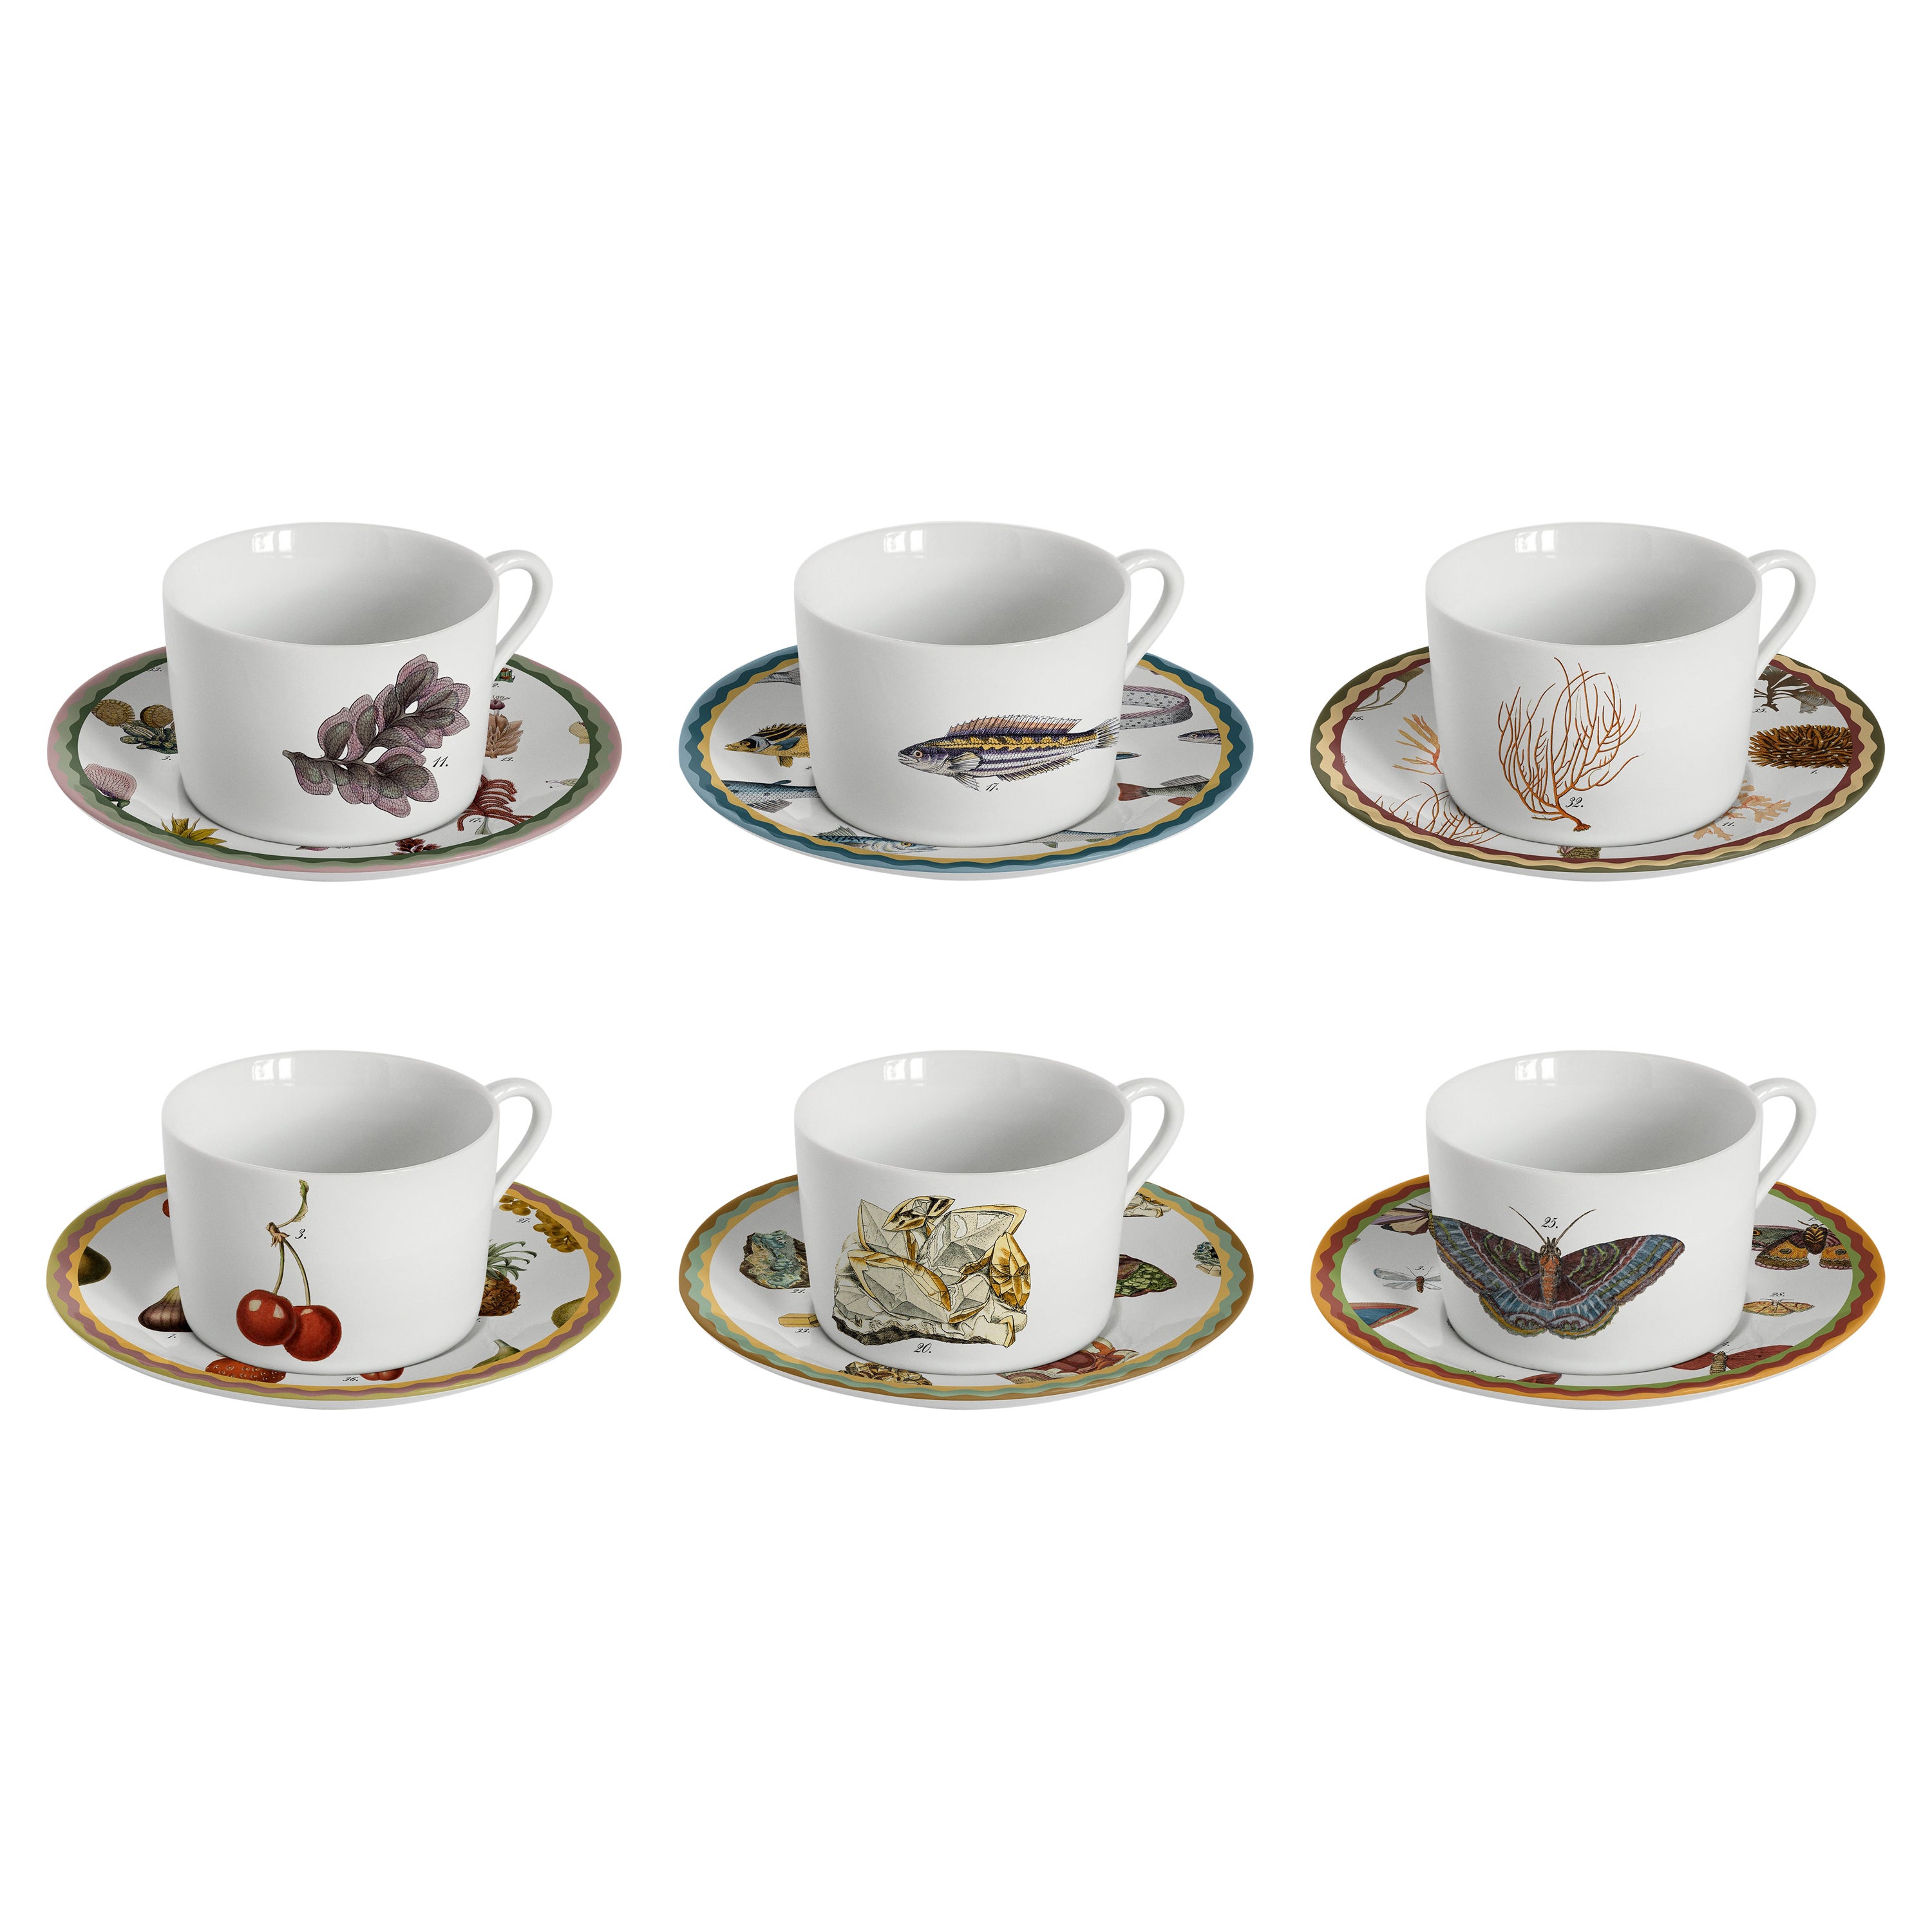 Cabinet De Curiosités, Six Contemporary Decorated Tea Cups with Plates